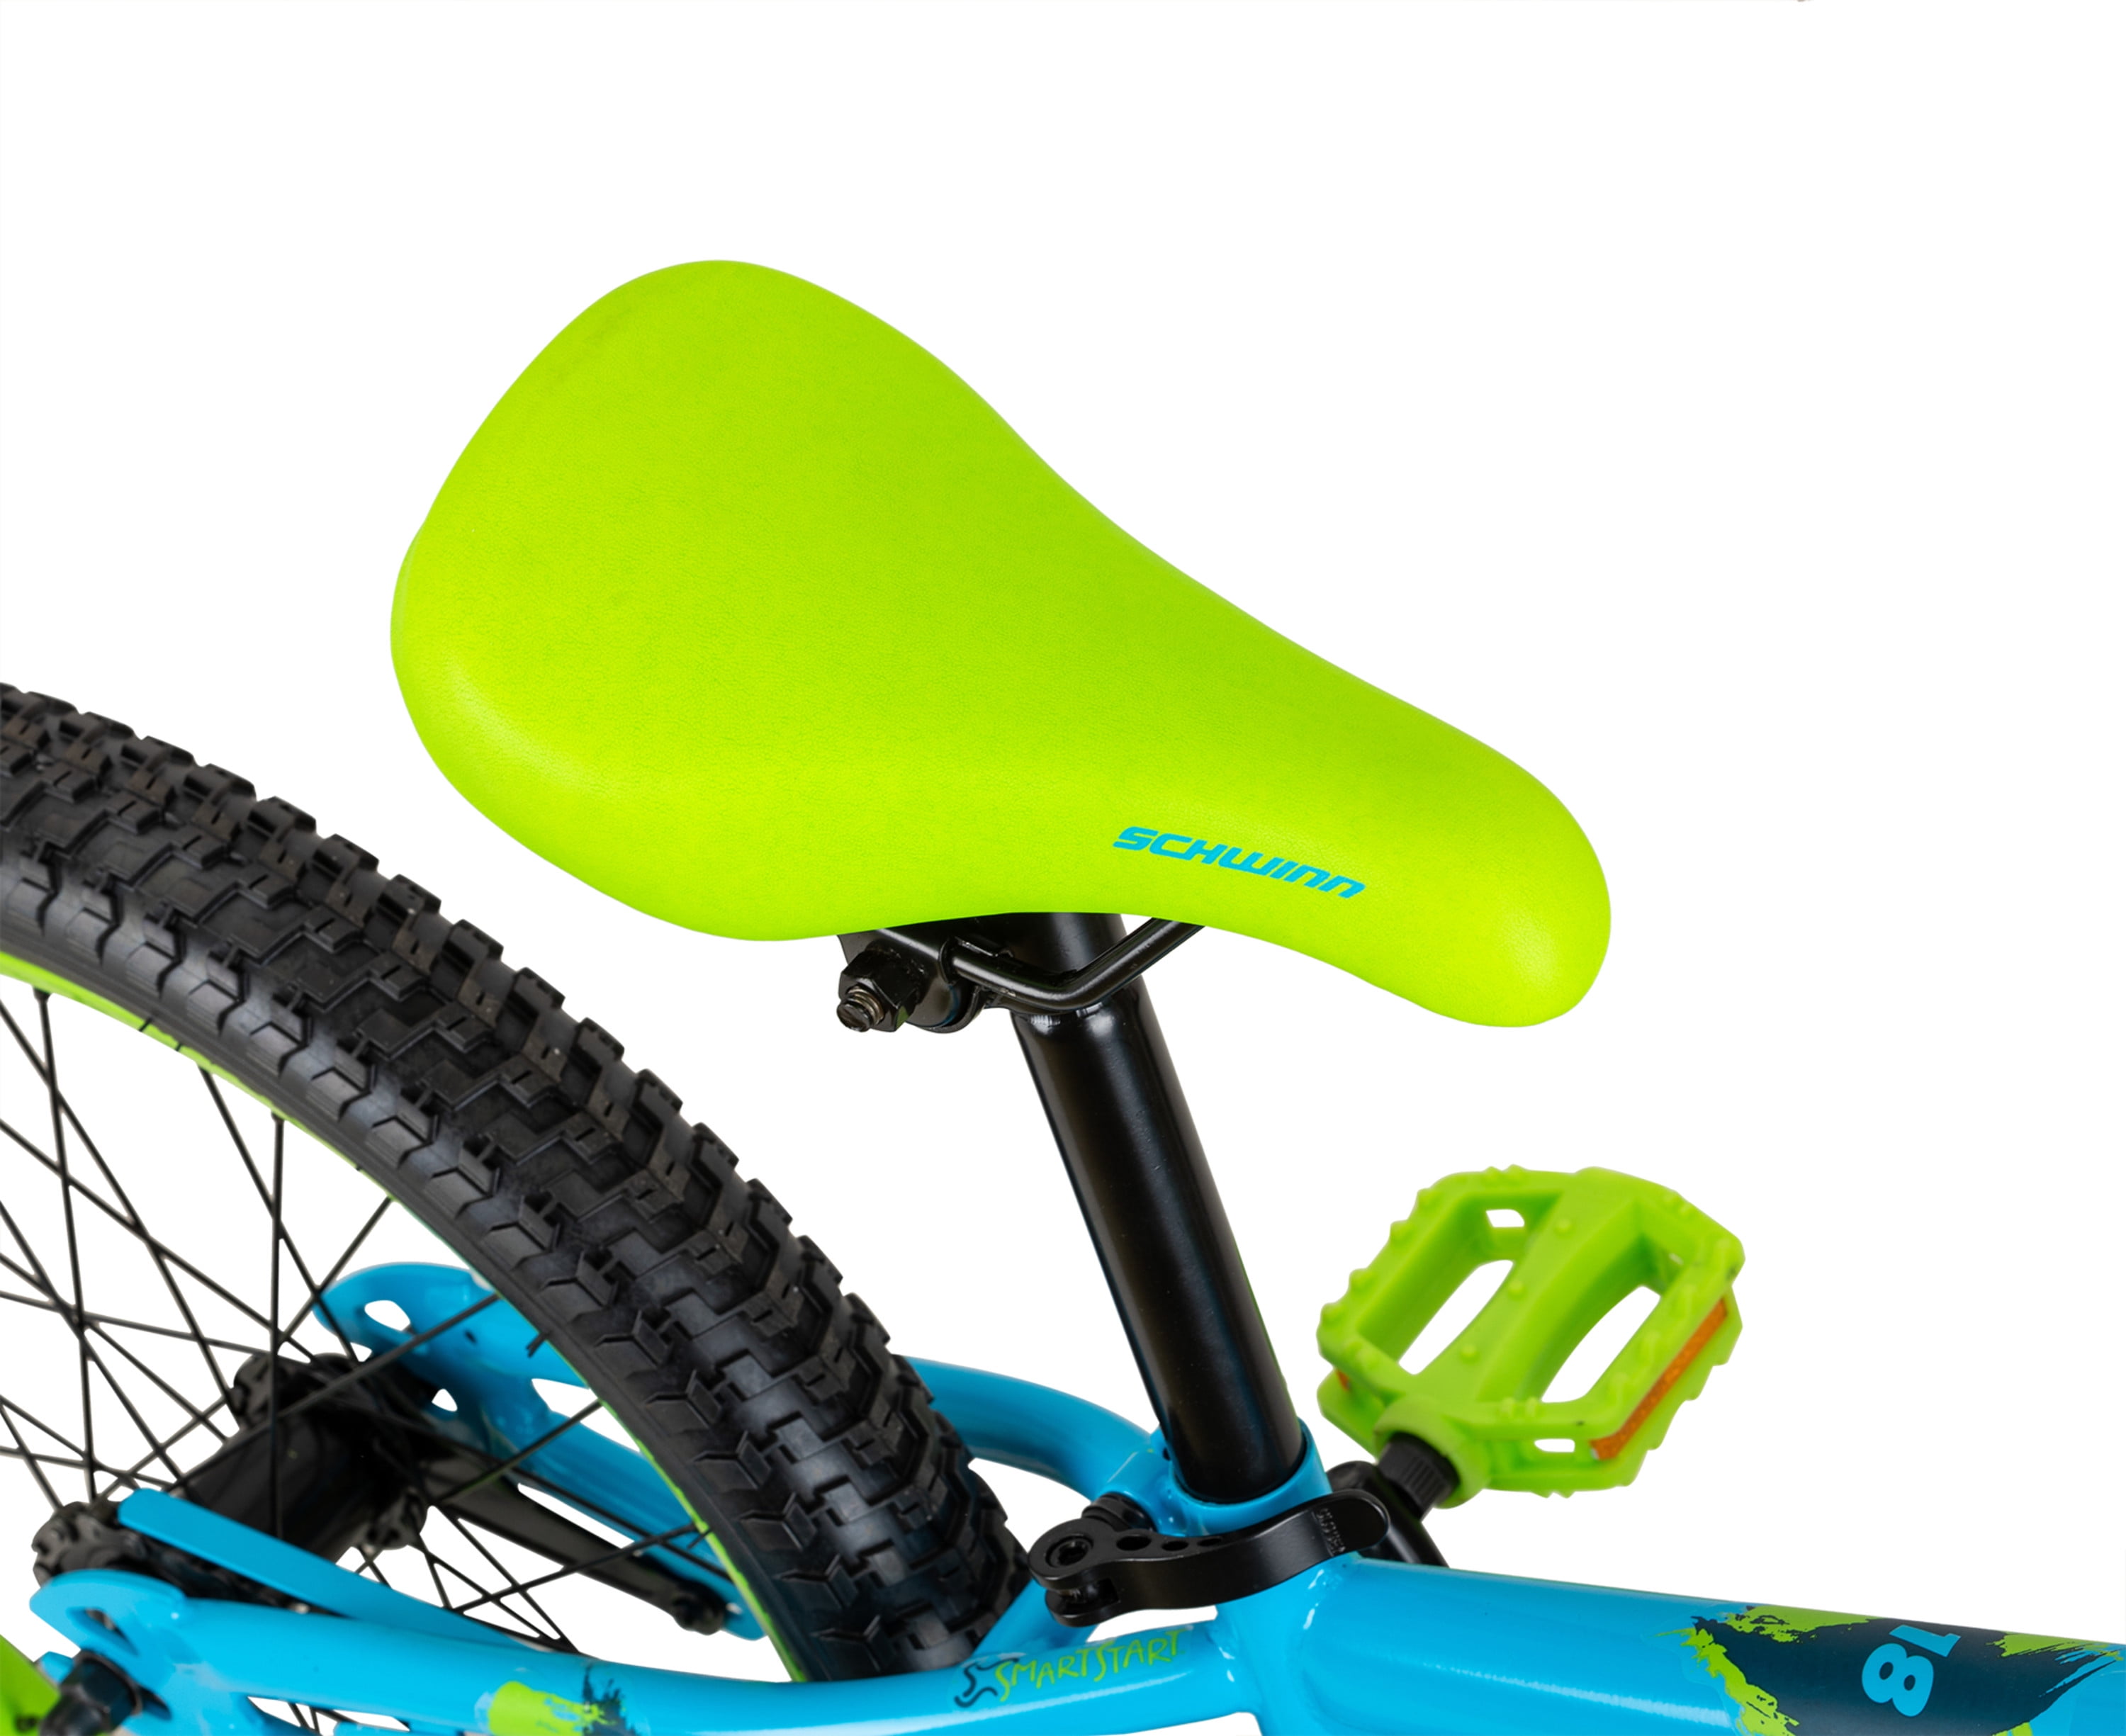 Schwinn Squirt Sidewalk Bike for Kids, 18-inch Wheels, Blue and Green